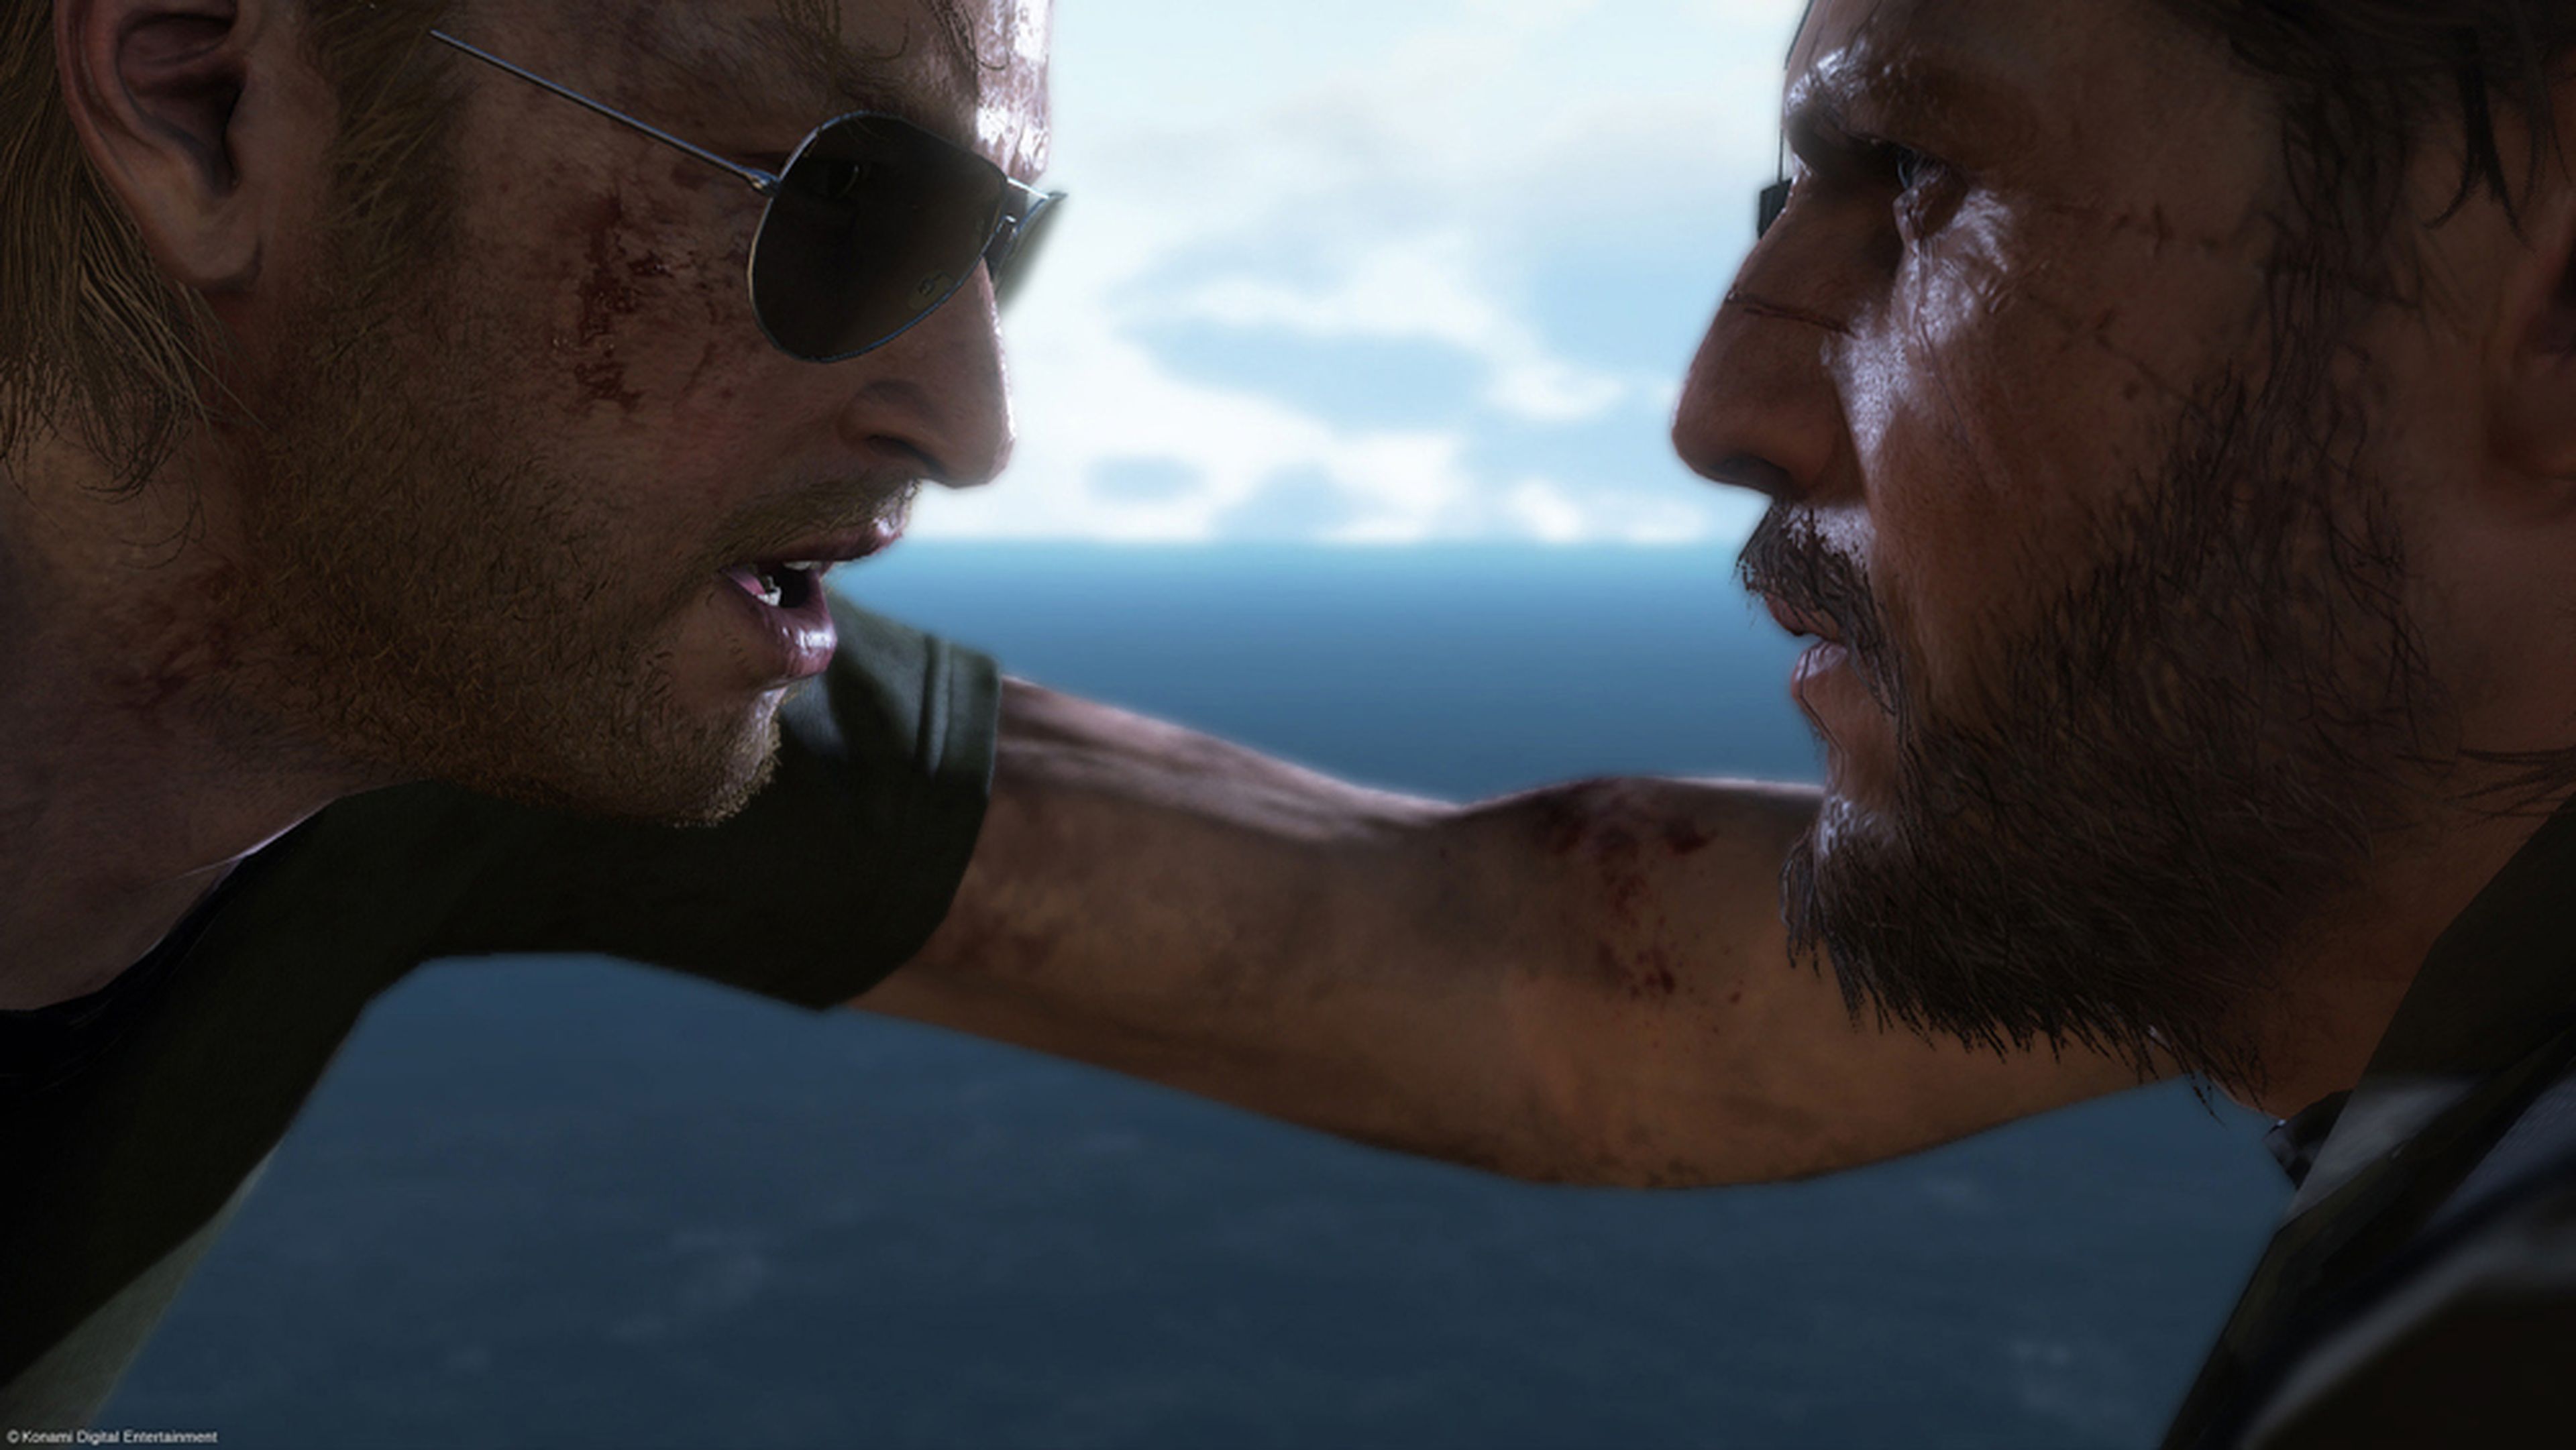 E3 2014: Impresiones de Metal Gear Solid V The Phantom Pain